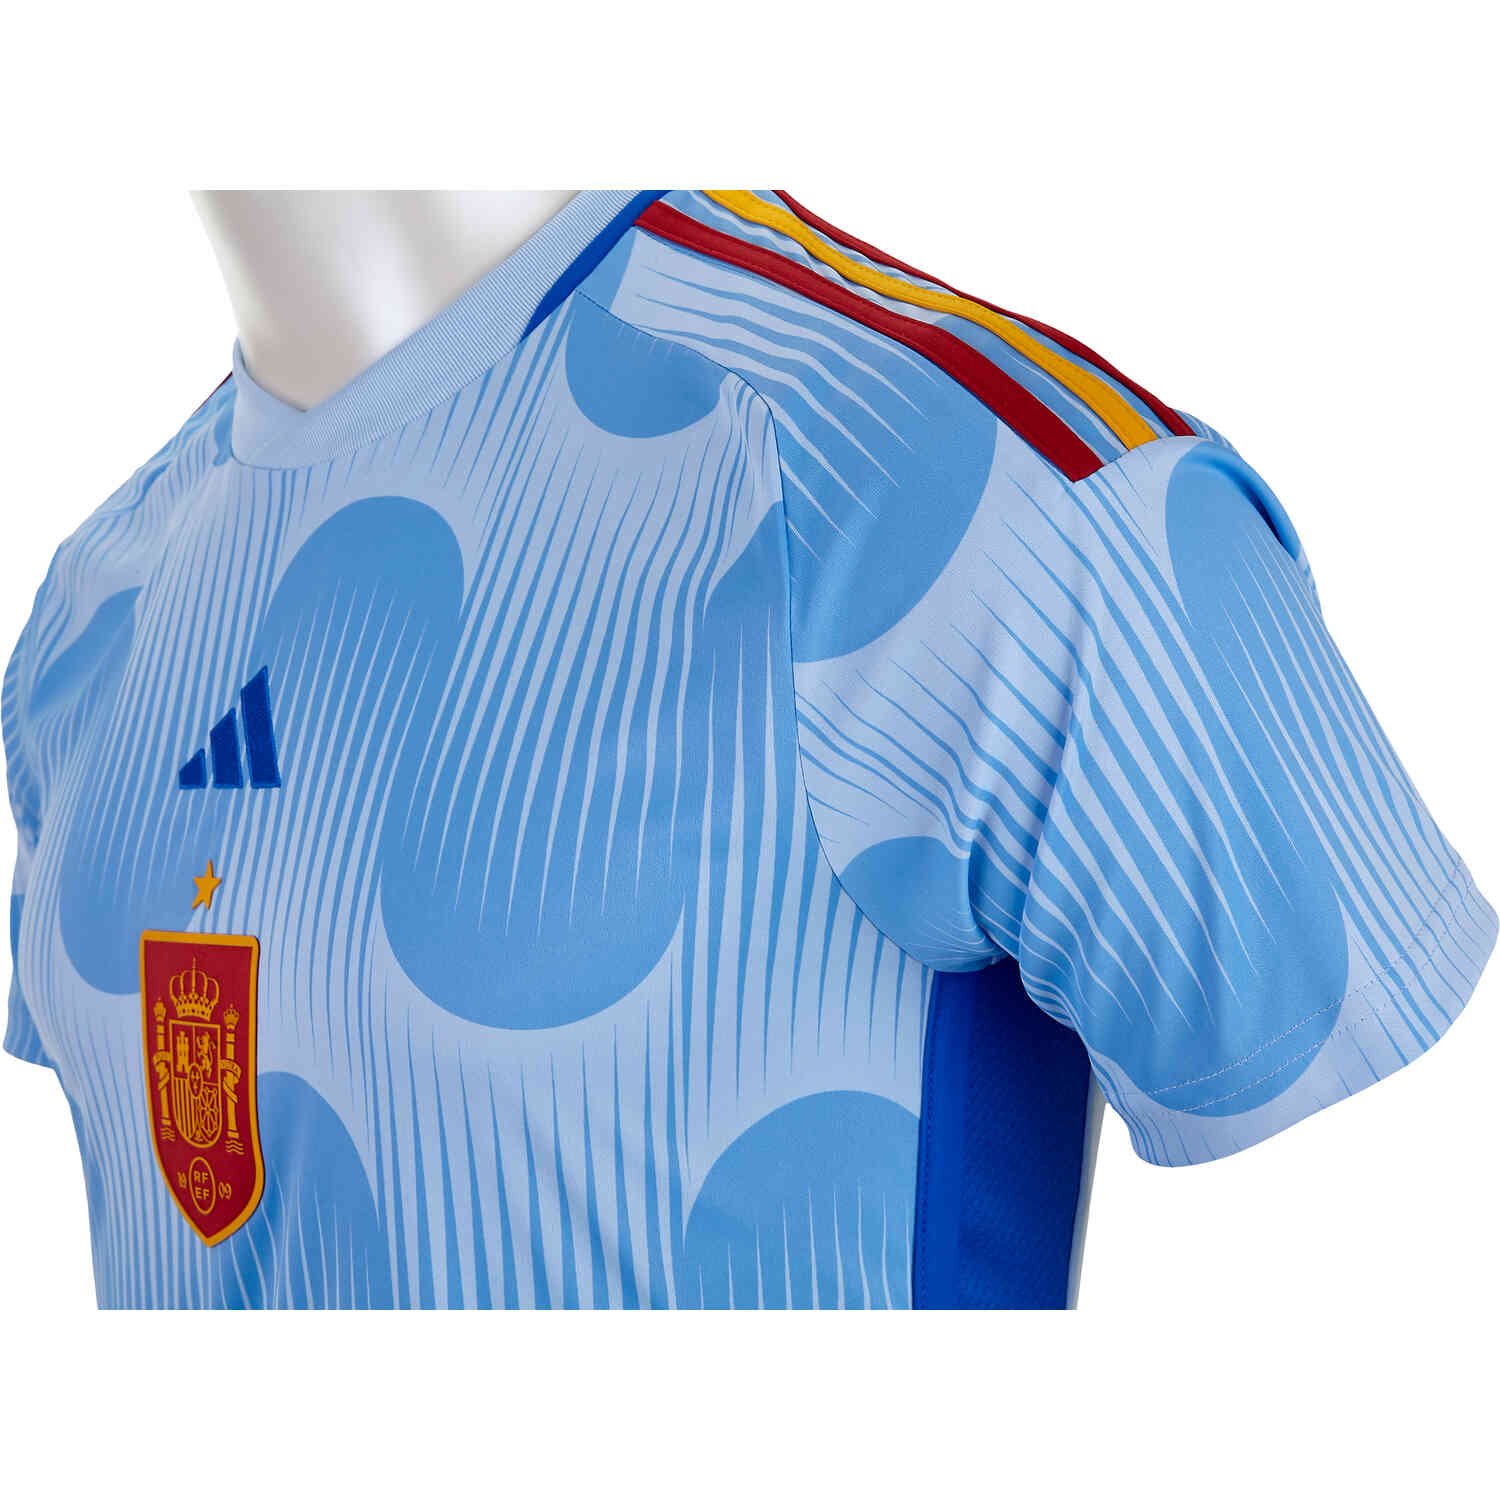 adidas Spain 22 Away Jersey - Blue, Men's Soccer